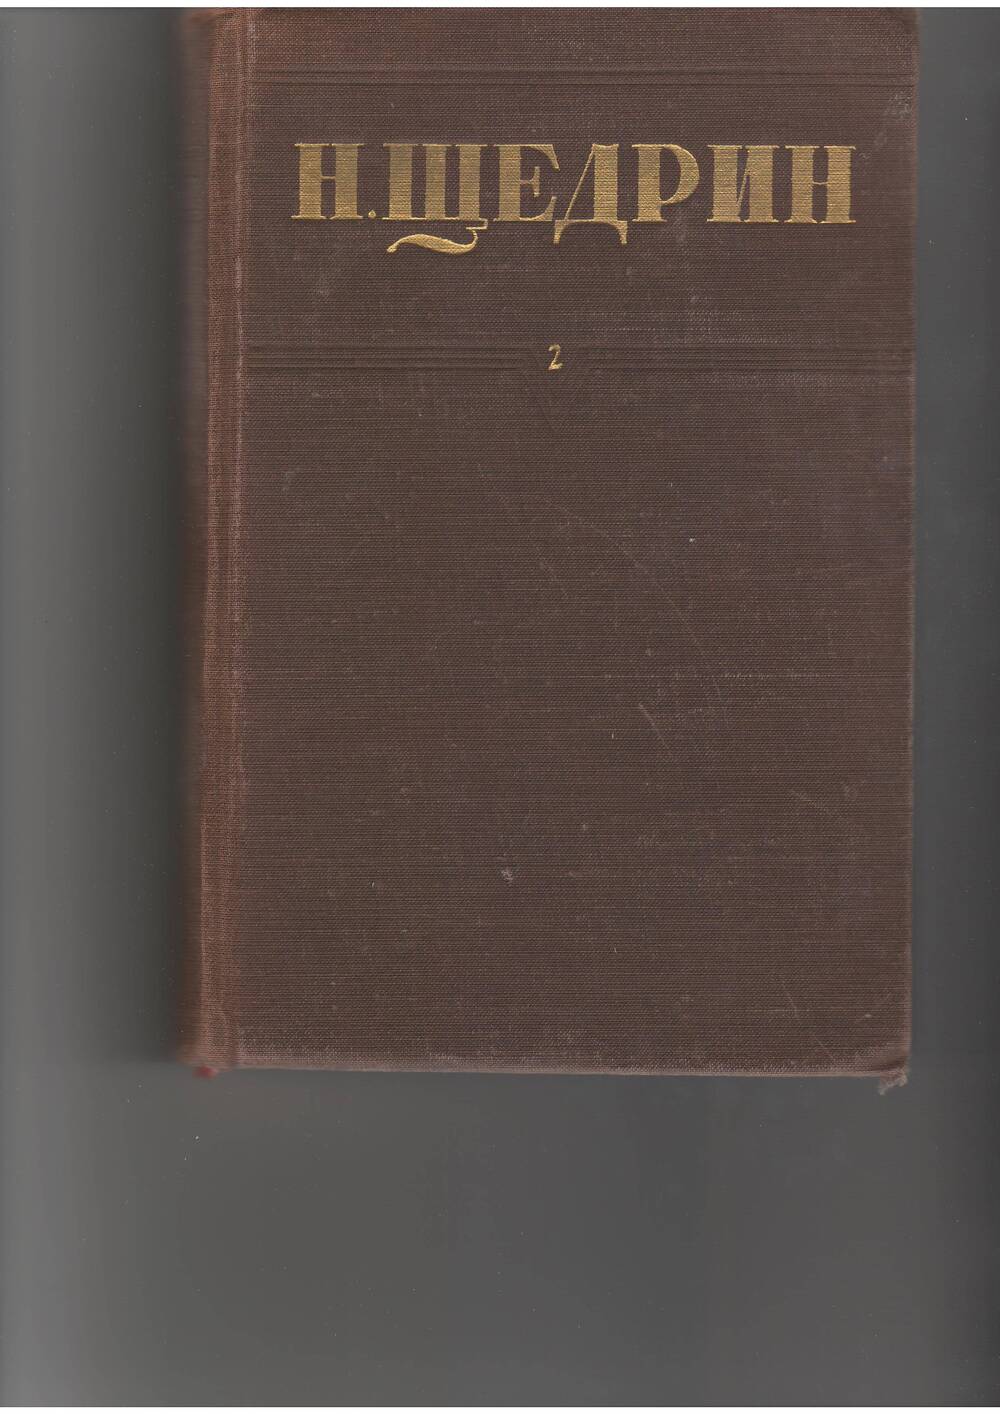 книга Щедрин Н. Собр. соч. т.2. - М: Правда,1951.